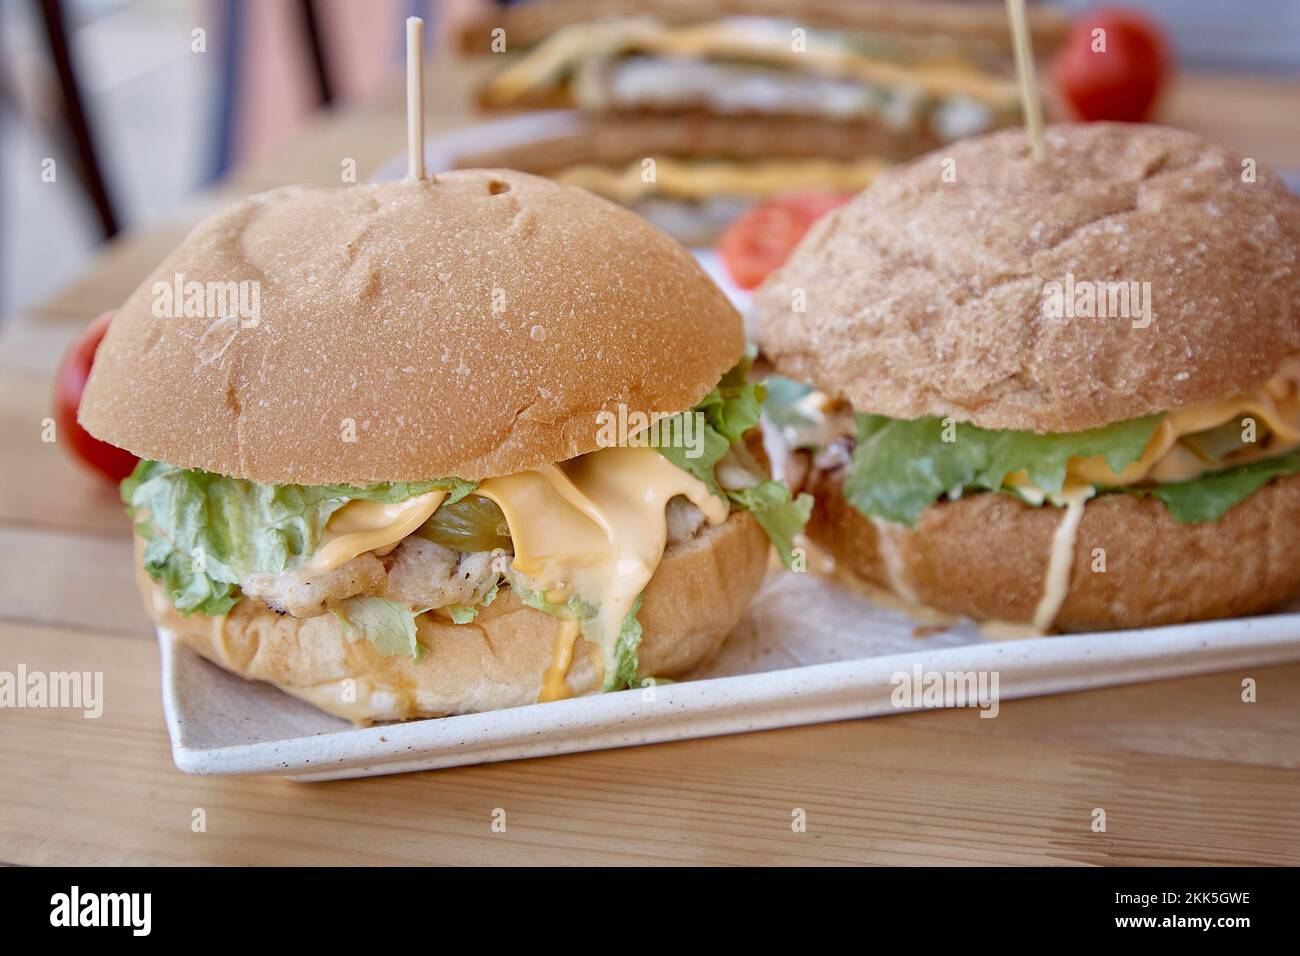 Aliments de restauration rapide sains alternatifs - hamburgers avec des côtelettes végétaliennes et sandwichs sains avec des champignons d'huîtres. Une alimentation adéquate. Banque D'Images